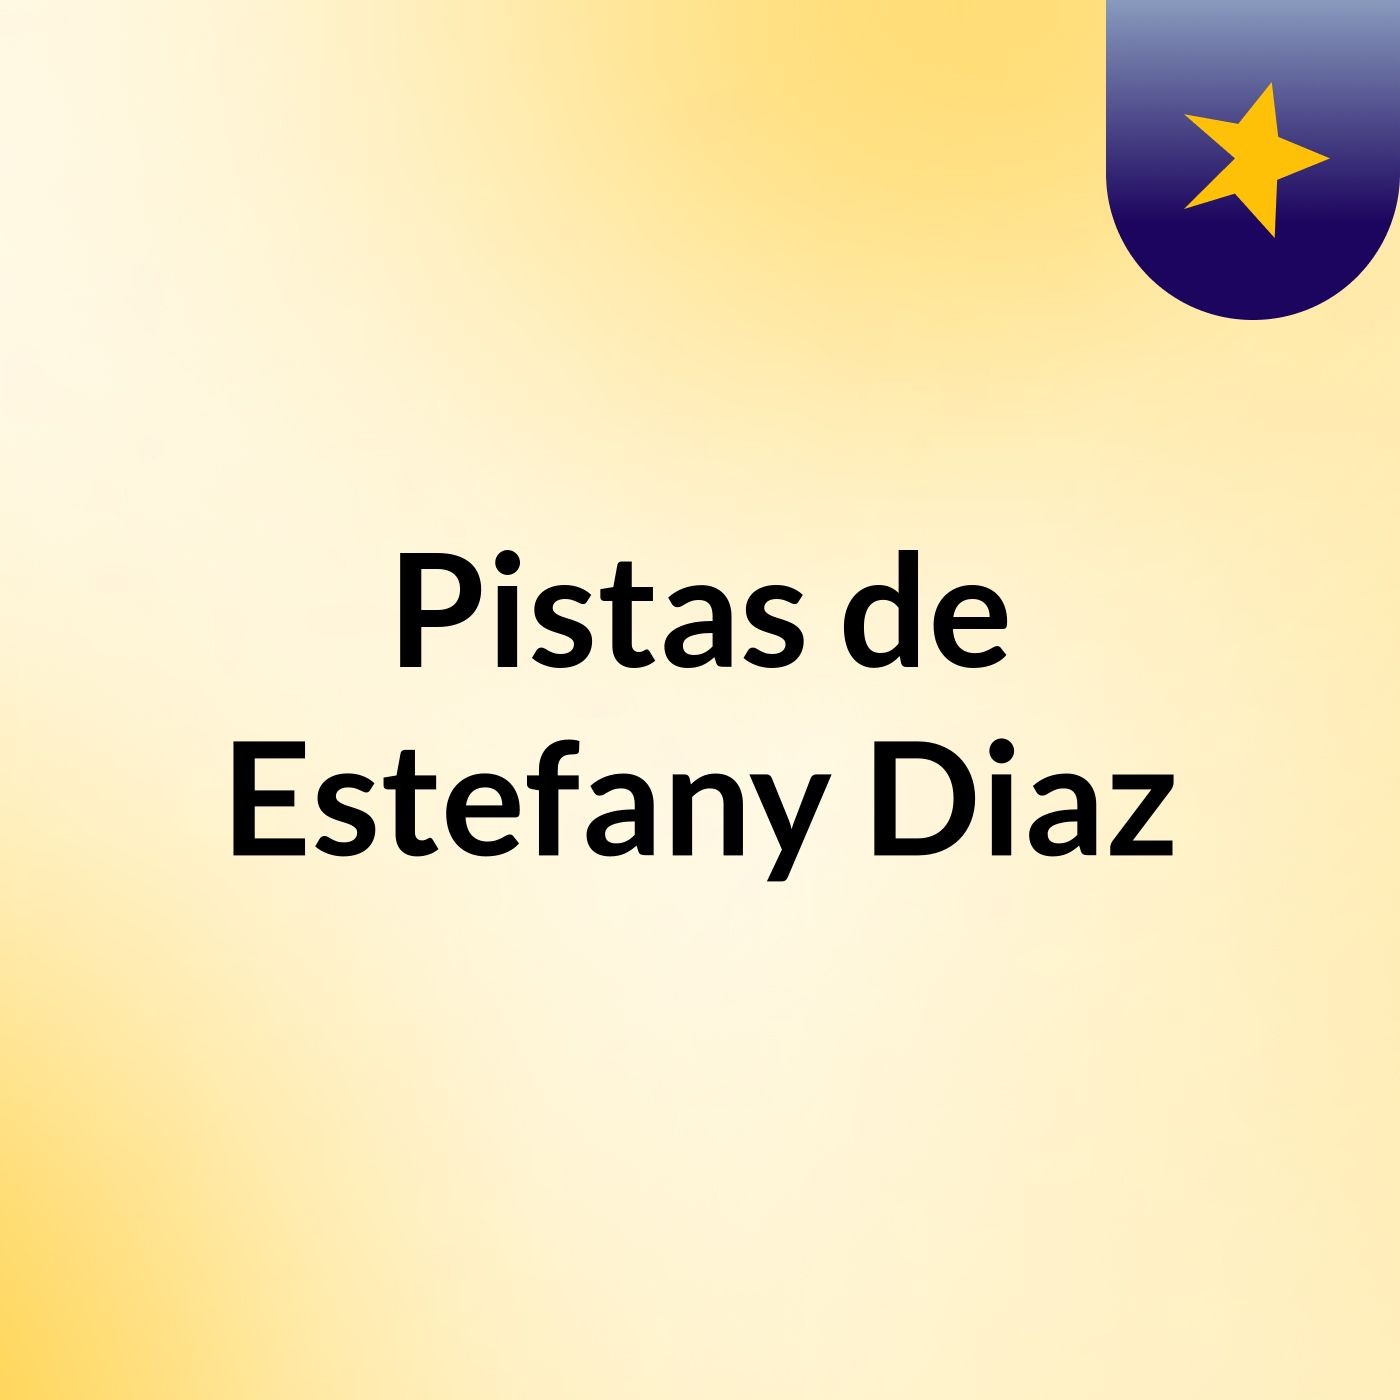 Pistas de Estefany Diaz